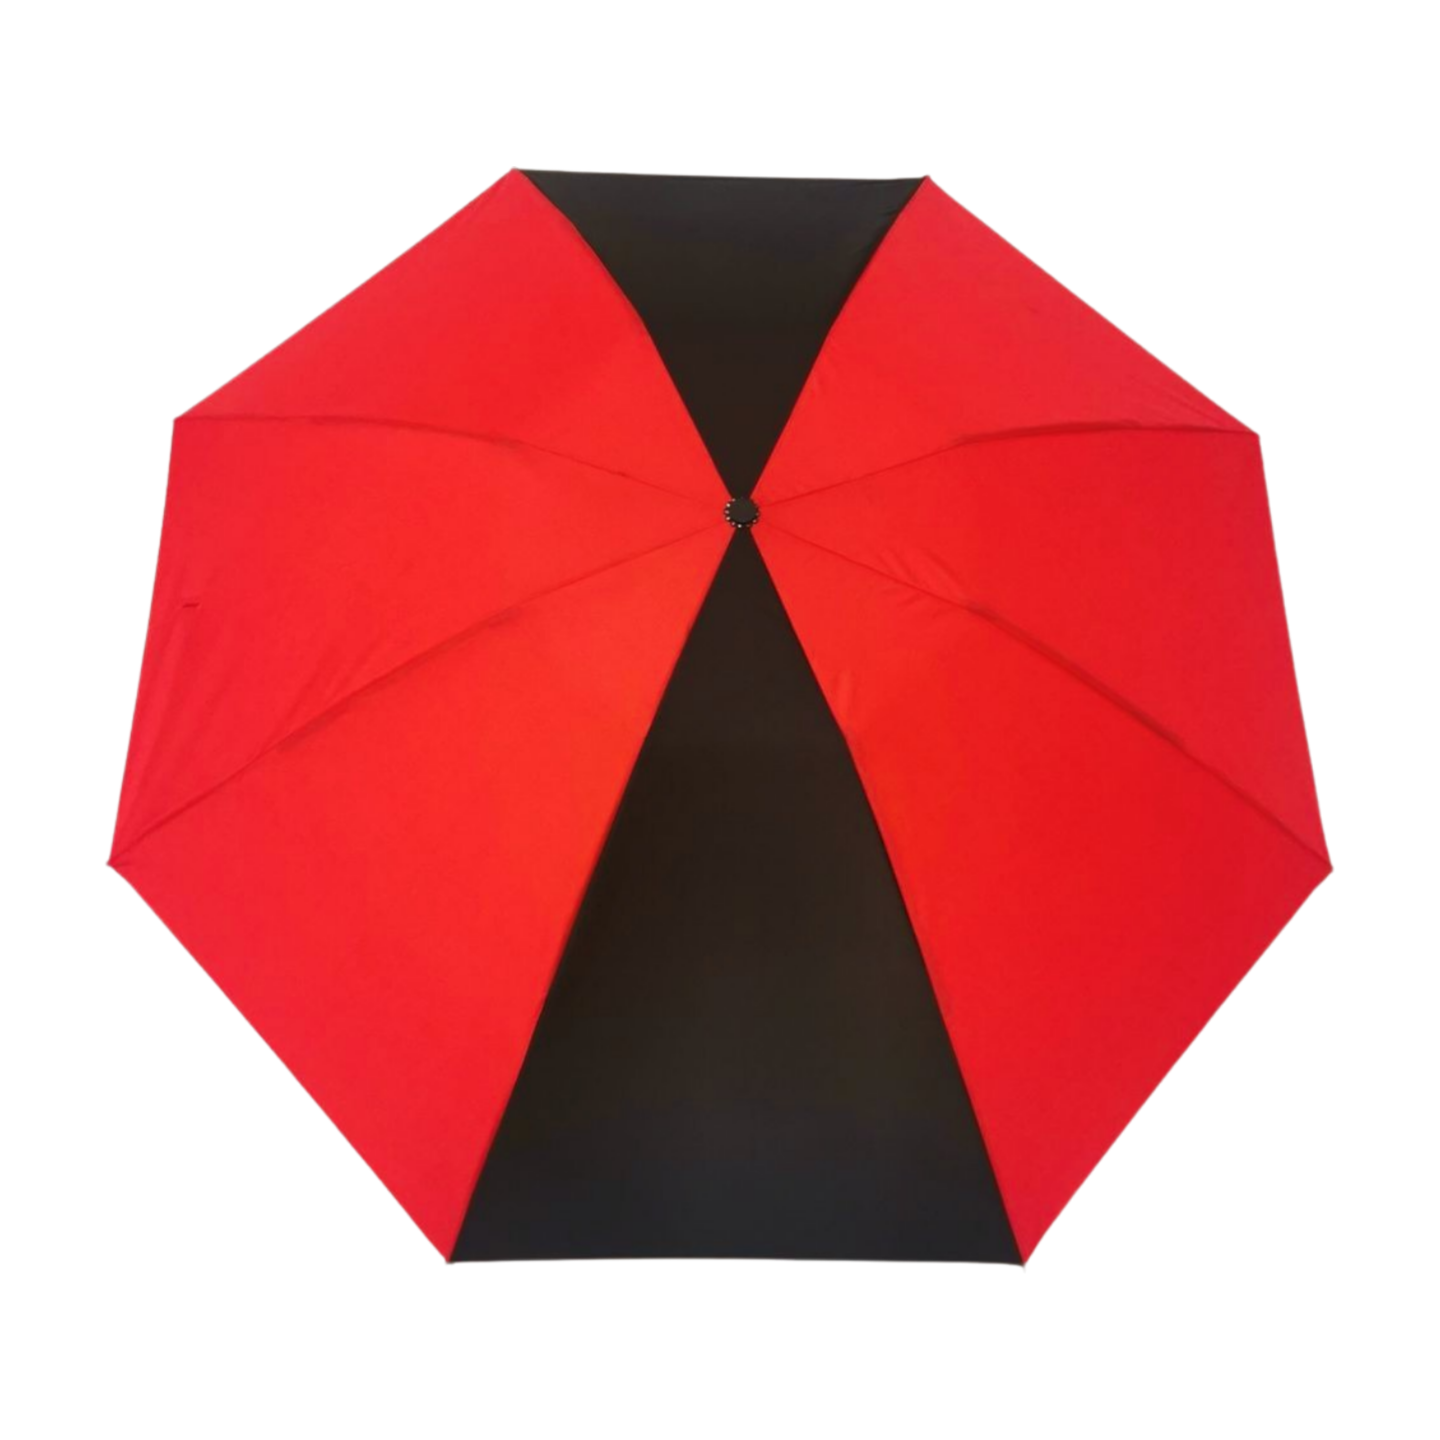 https://www.hodaumbrella.com/upgrade-fiberg…erted-umbrella-product/